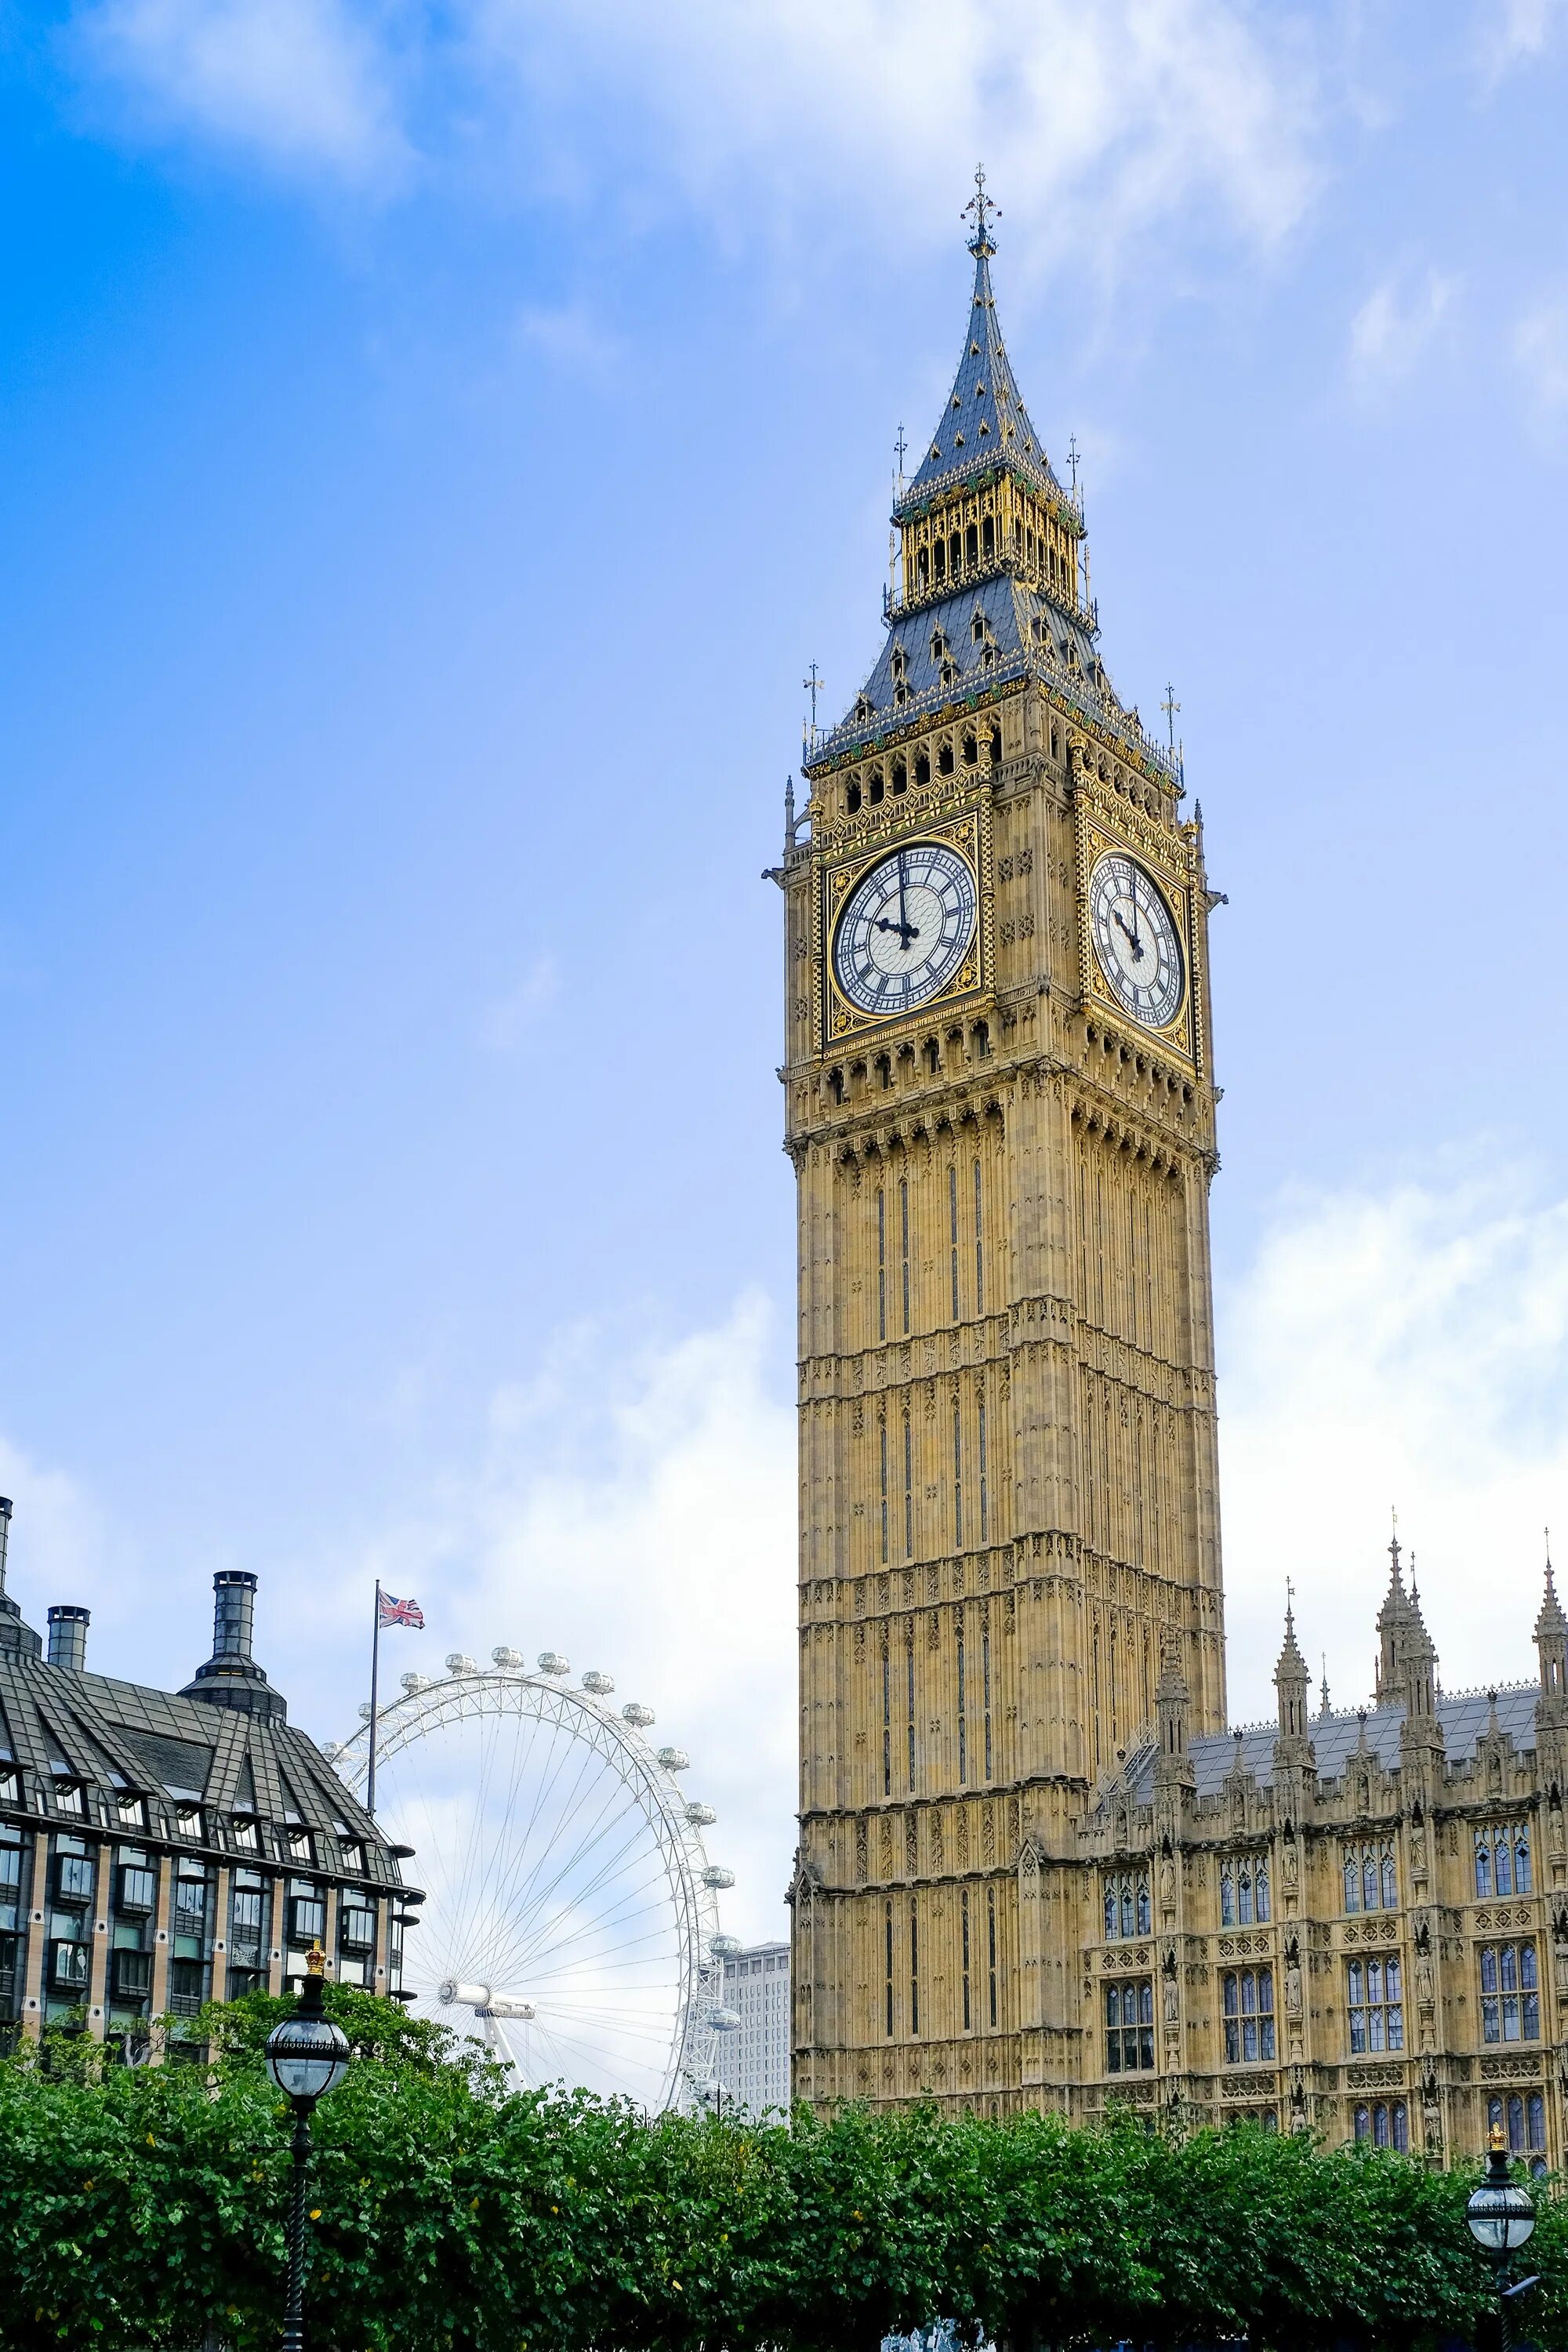 Watching britain. Часовая башня Вестминстерского дворца. Часовая башня Биг Бен. Биг-Бен (башня Елизаветы) достопримечательности Лондона. Башня Тауэр в Лондоне часы.